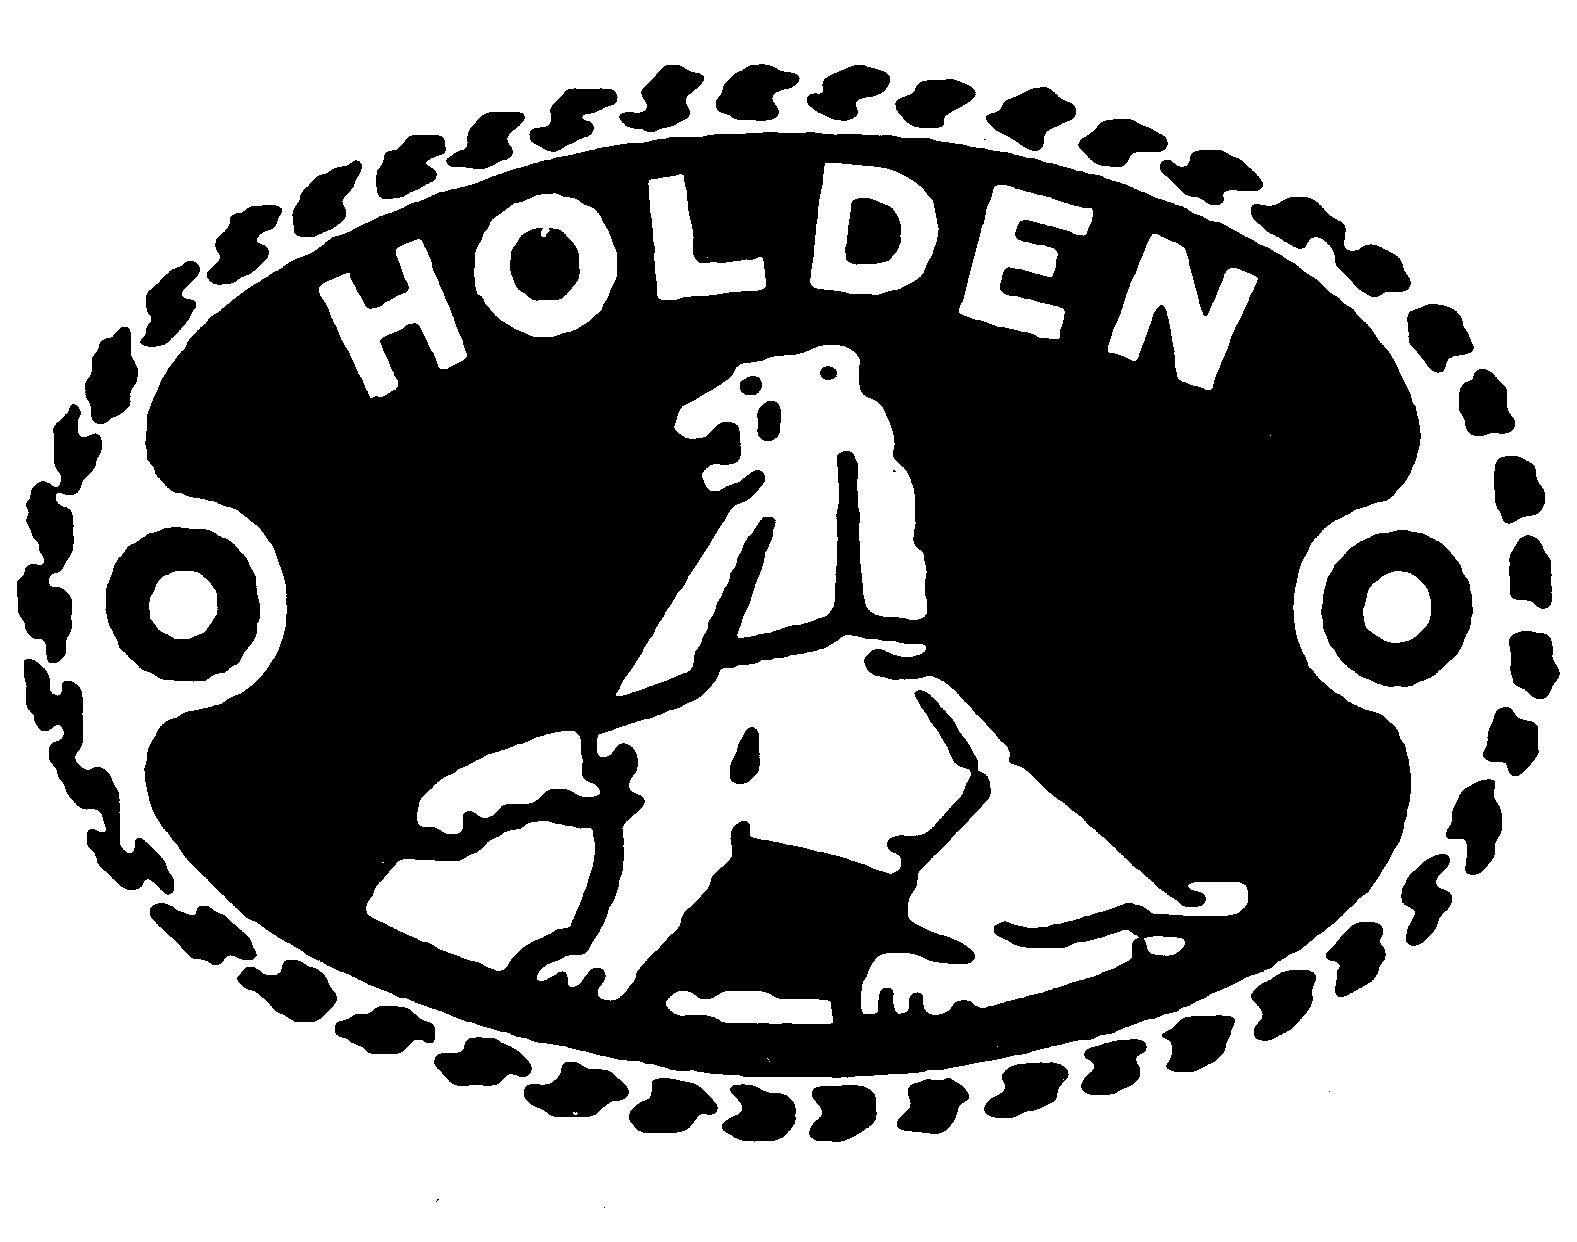 Holden Logo - Holden | Logopedia | FANDOM powered by Wikia